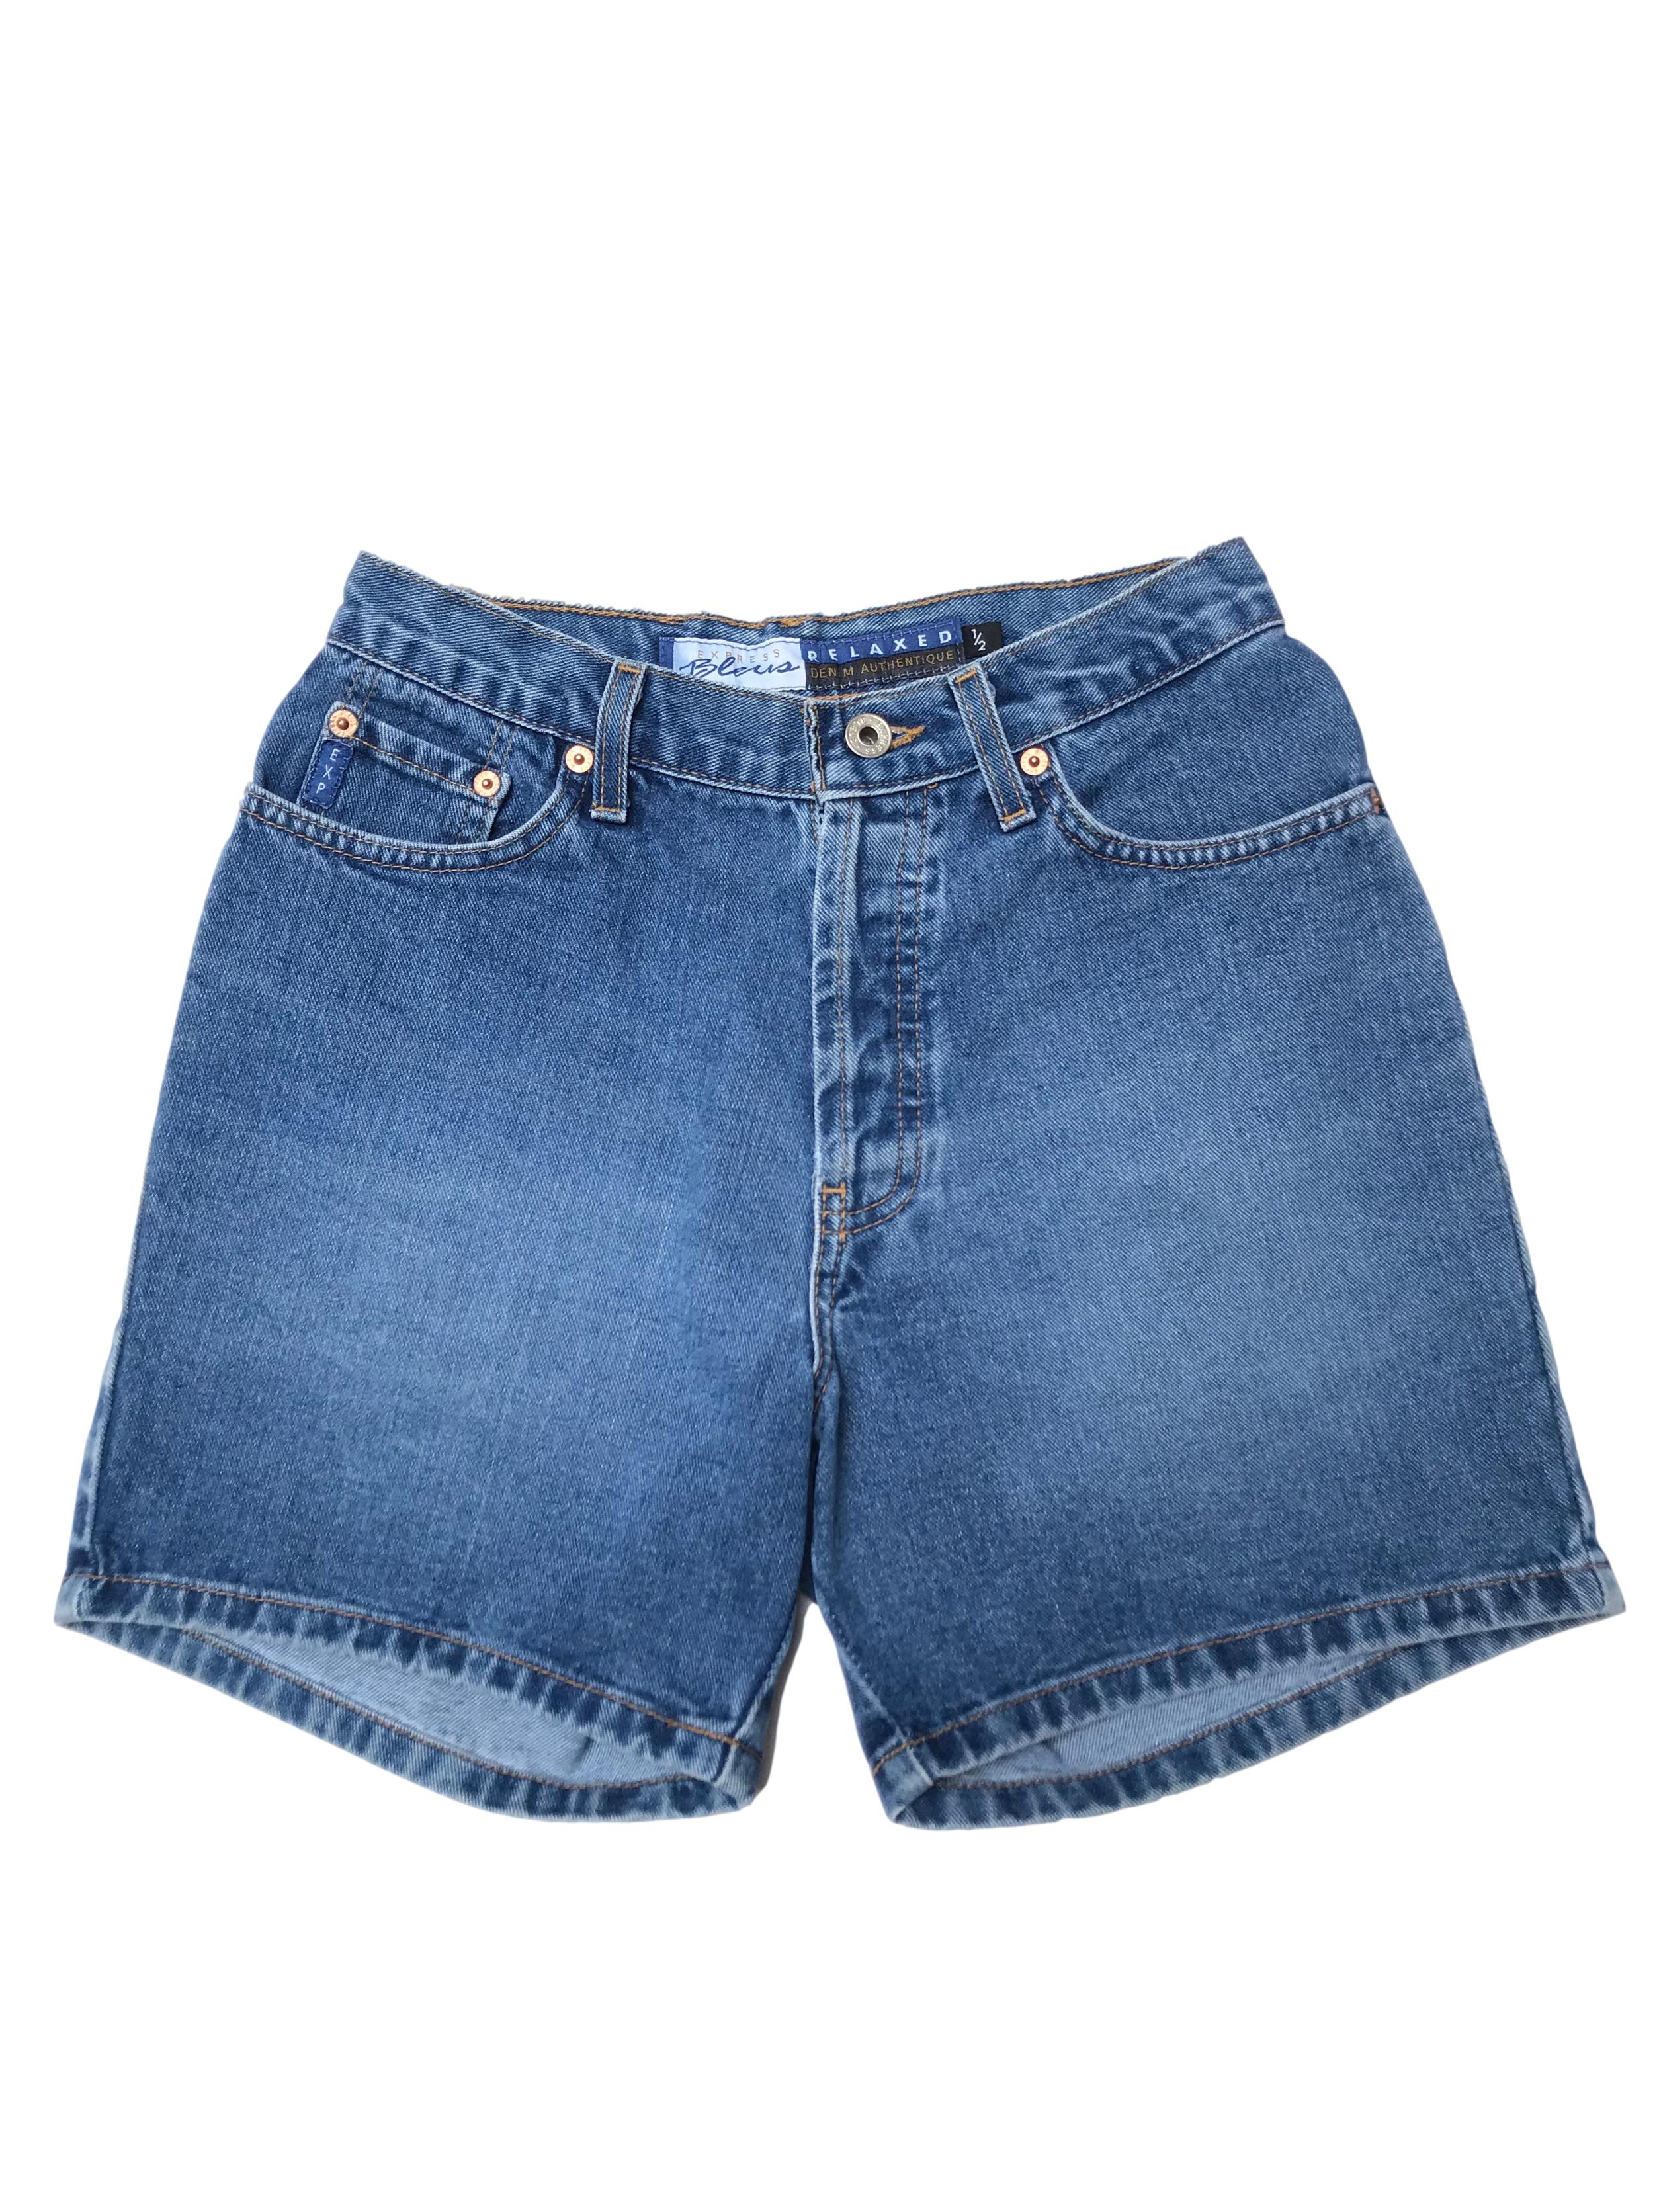 Short jean a la cintura 100% algodón con bolsillos laterales y traseros. Cintura 68cm Largo 39cm